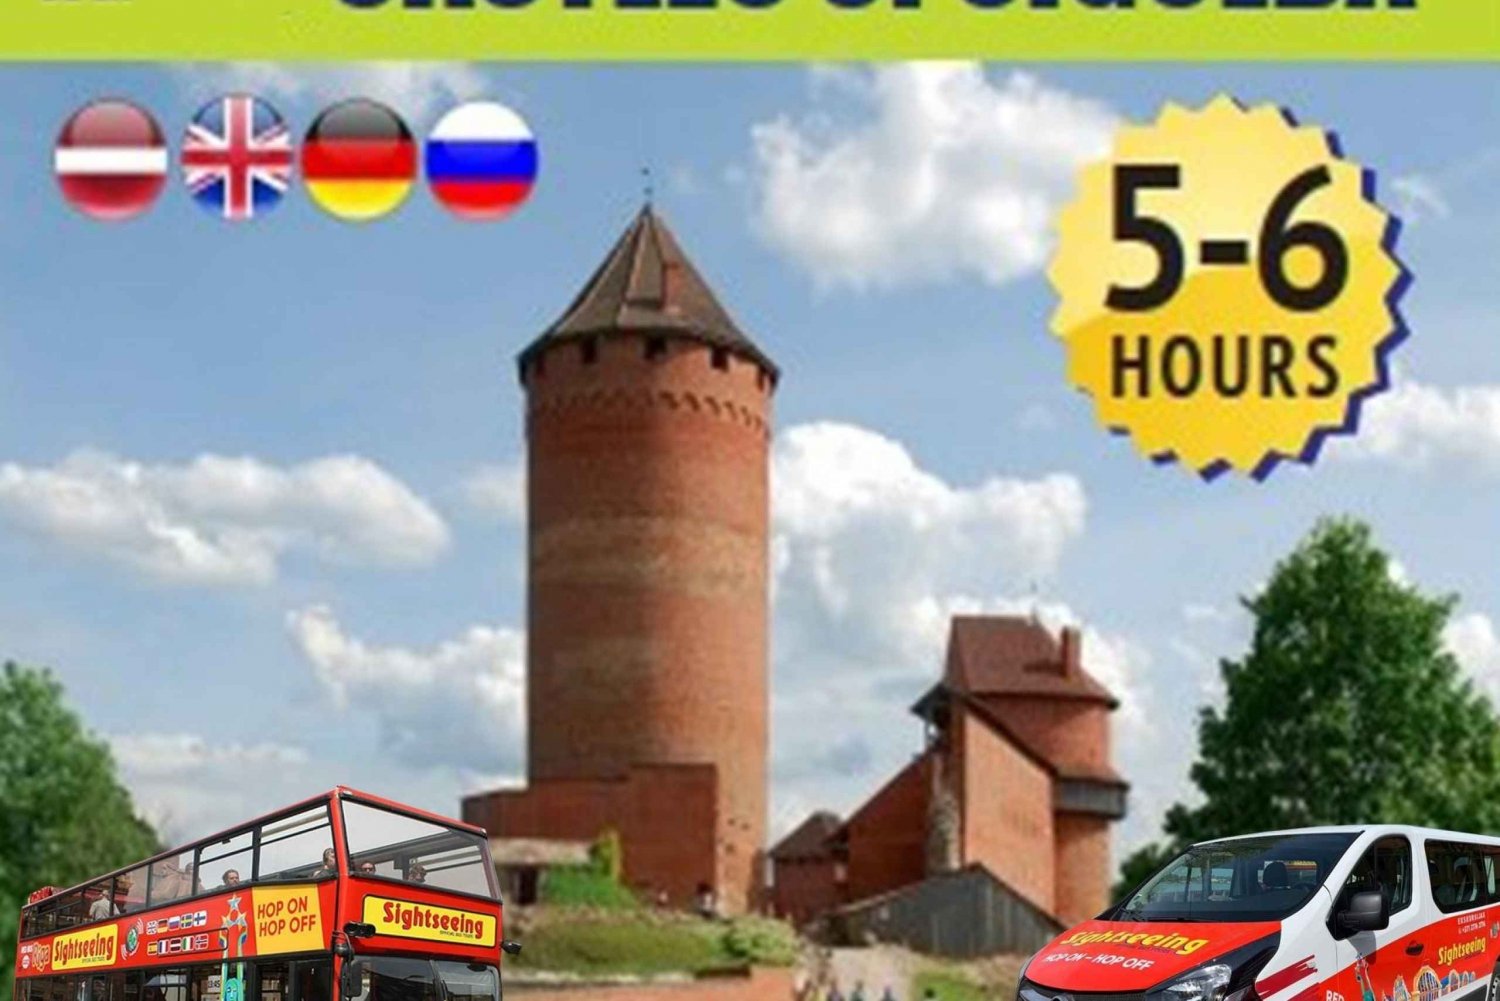 Au départ de Riga : visite à la journée des châteaux de Sigulda (Audio Tour)